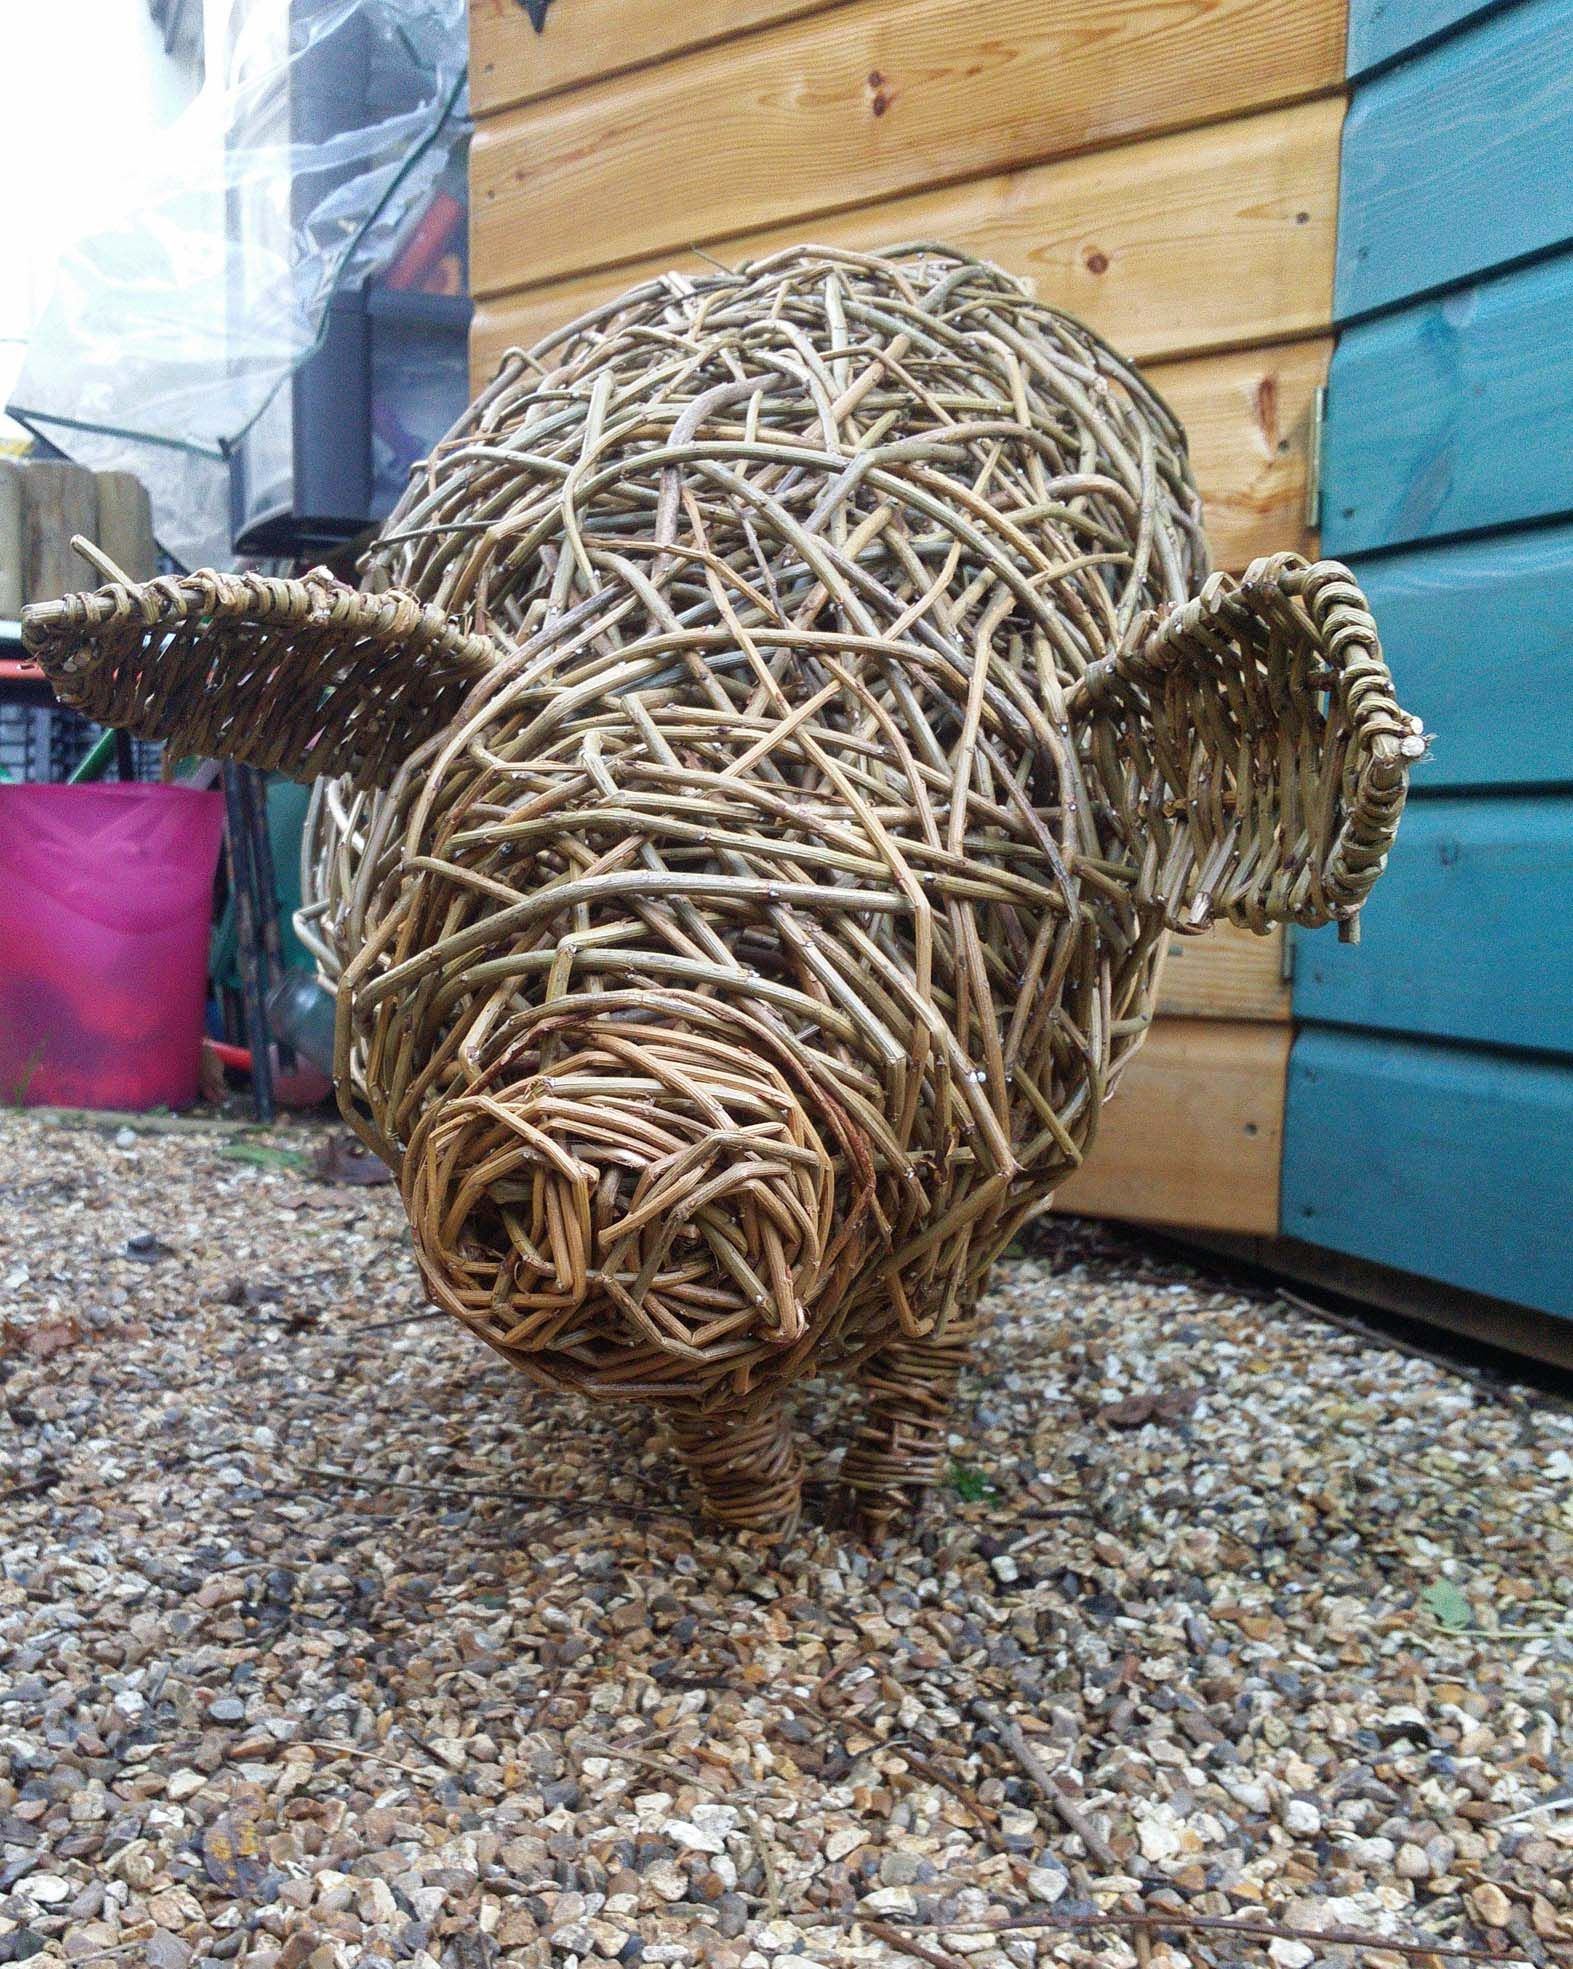 Willow pig sculpture